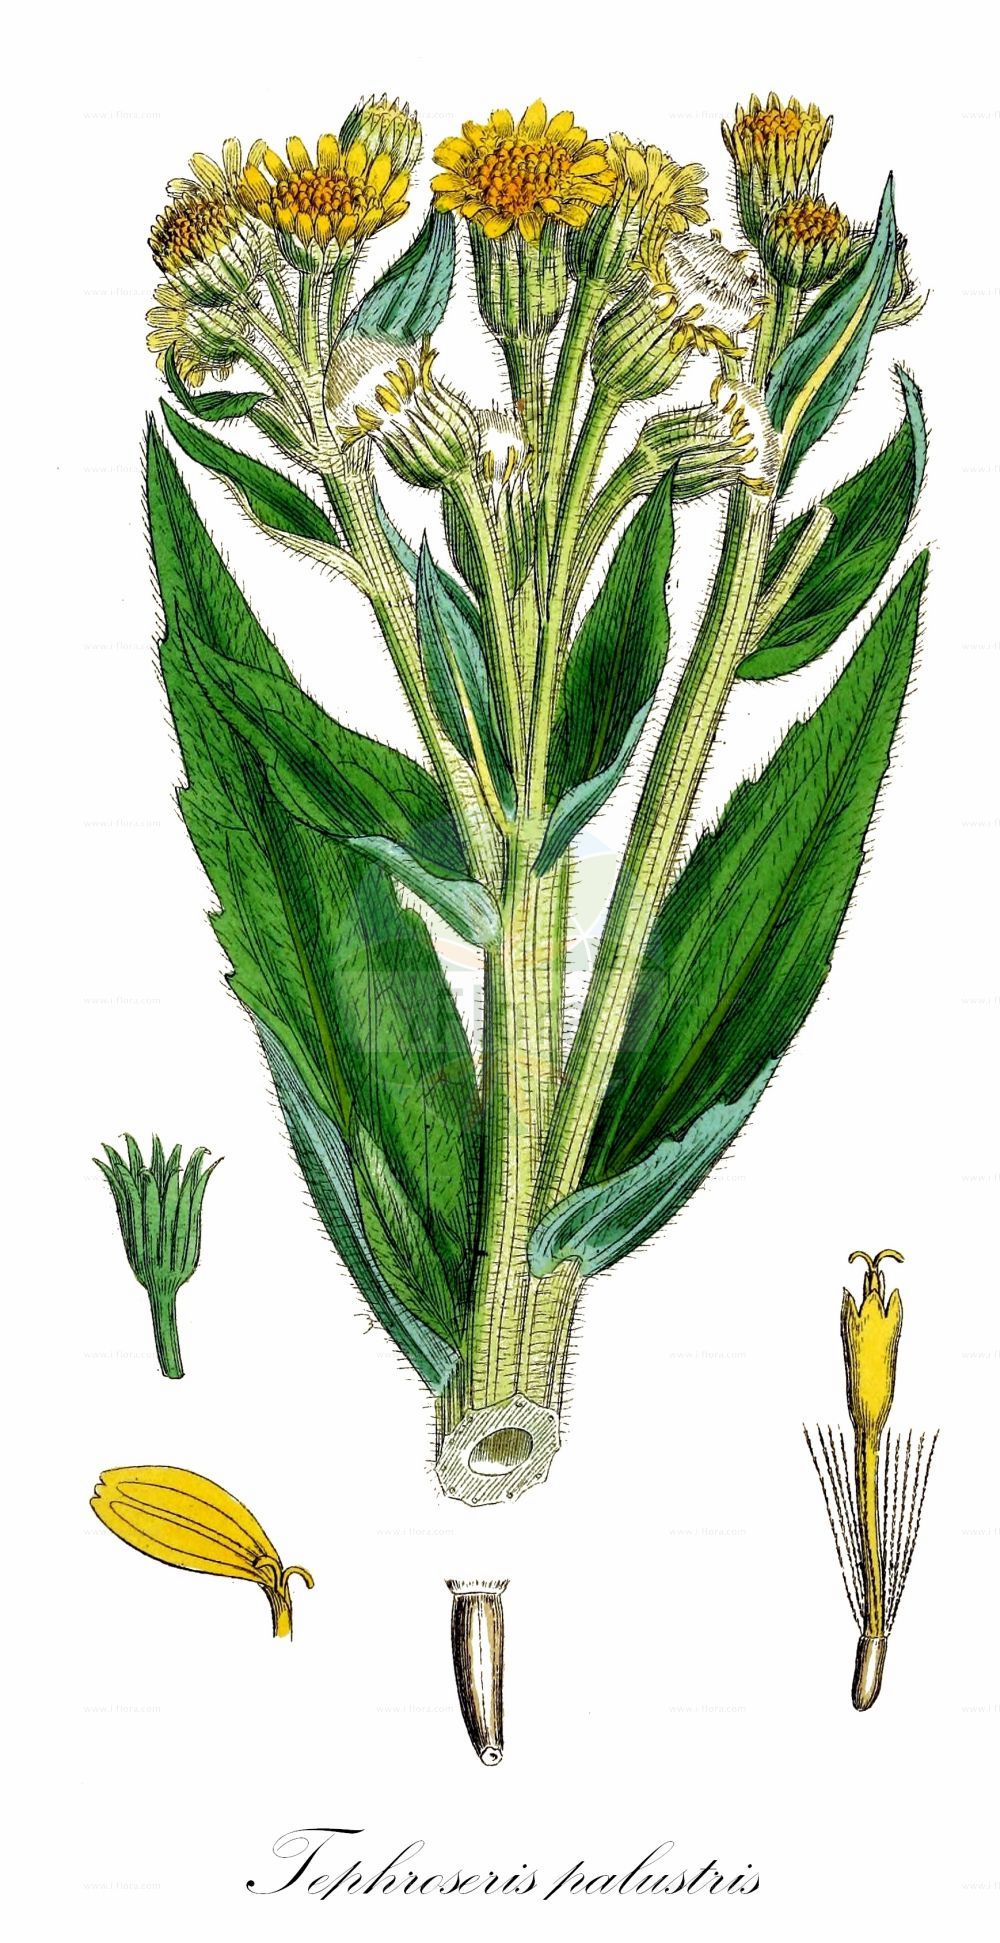 Historische Abbildung von Tephroseris palustris (Moor-Greiskraut - Marsh Fleawort). Das Bild zeigt Blatt, Bluete, Frucht und Same. ---- Historical Drawing of Tephroseris palustris (Moor-Greiskraut - Marsh Fleawort). The image is showing leaf, flower, fruit and seed.(Tephroseris palustris,Moor-Greiskraut,Marsh Fleawort,Cineraria congesta,Cineraria palustris,Othonna palustris,Senecio arcticus,Senecio congestus,Senecio palustris,Senecio tubicaulis,Tephroseris palustris,Tephroseris palustris subsp. congesta,Moor-Greiskraut,Marsh Fleawort,Marsh Fleabane,Swamp Ragwort,Tephroseris,Greiskraut,Groundsel,Asteraceae,Korbblütengewächse,Daisy family,Blatt,Bluete,Frucht,Same,leaf,flower,fruit,seed,Sowerby (1790-1813))